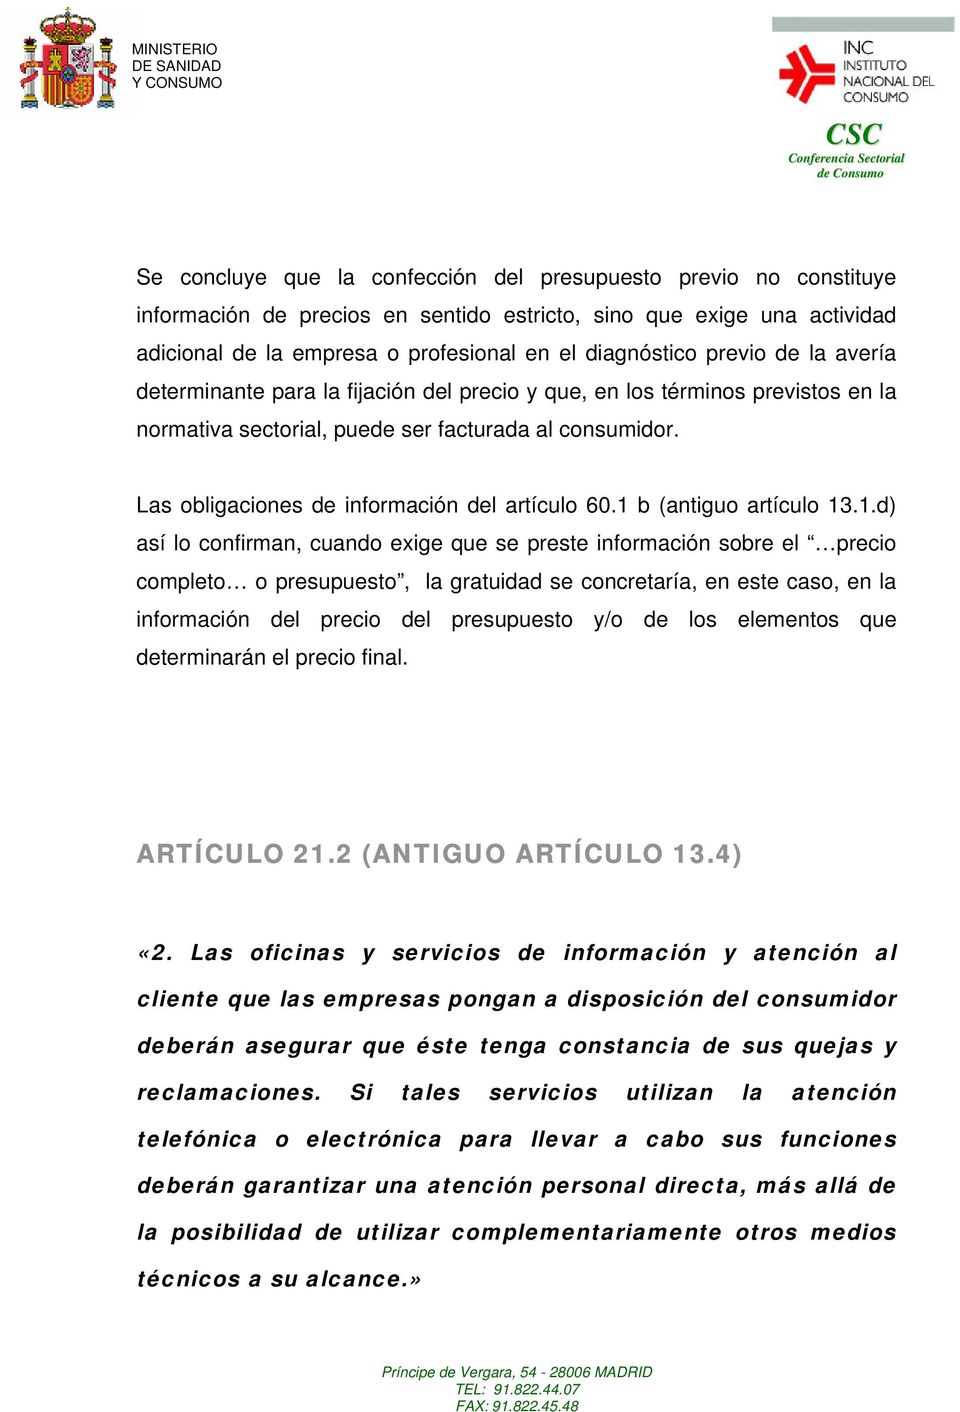 Las obligaciones de información del artículo 60.1 